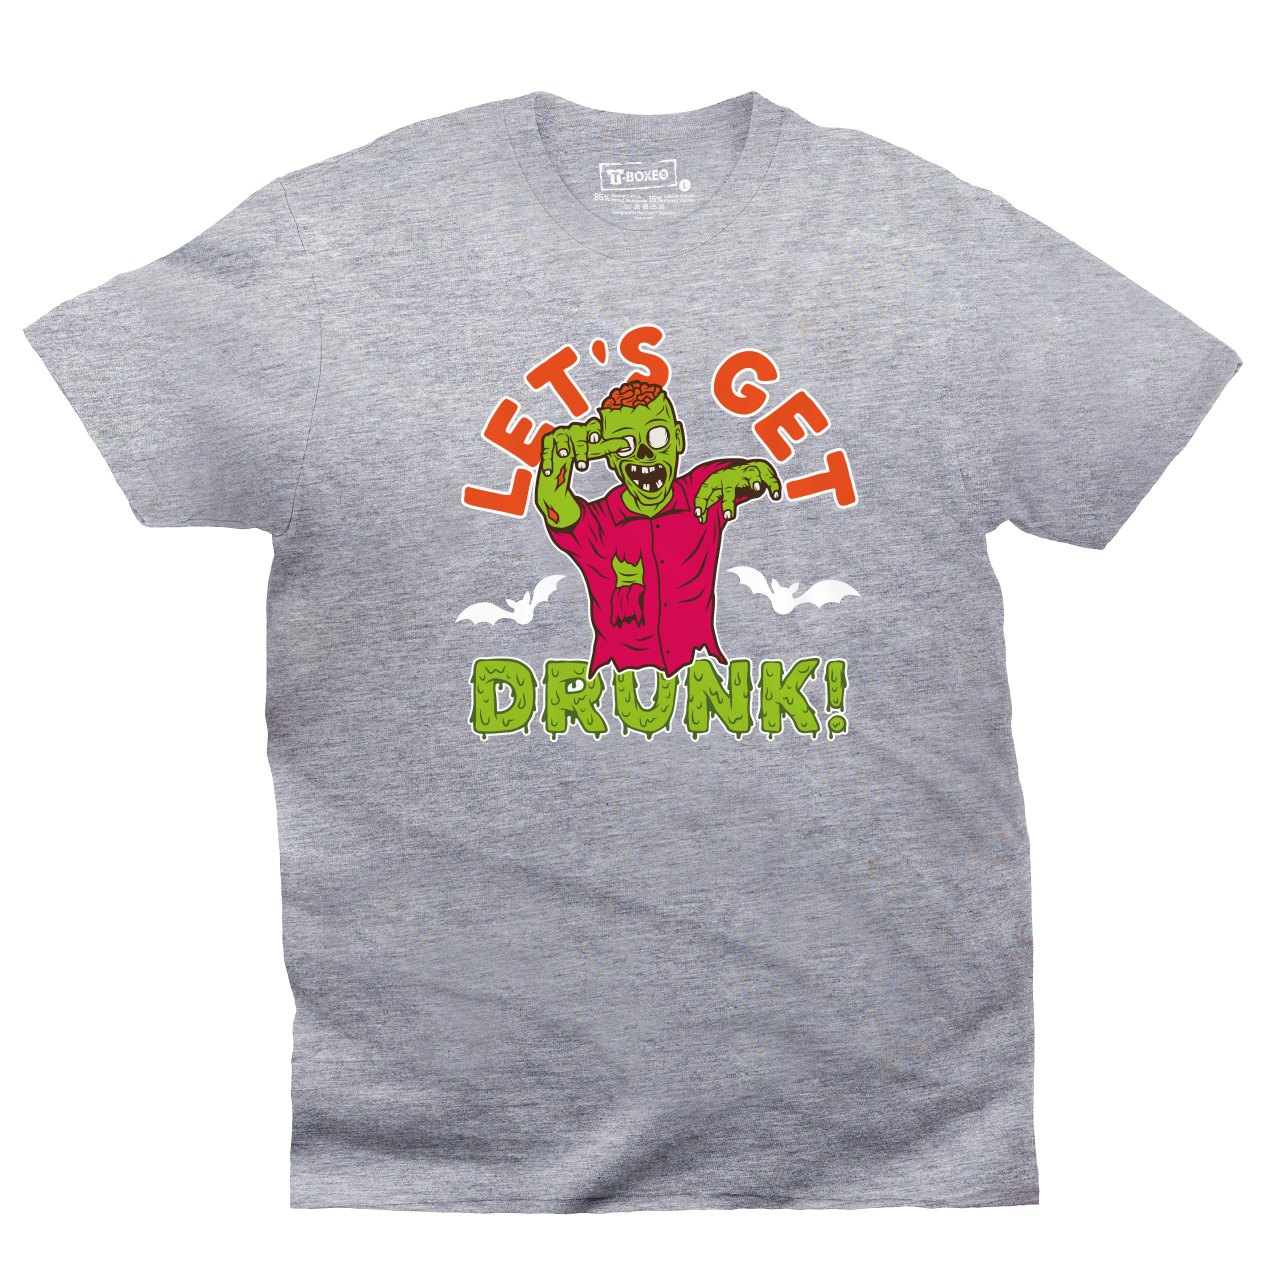 Pánské tričko s potiskem “Let’s get drunk!"